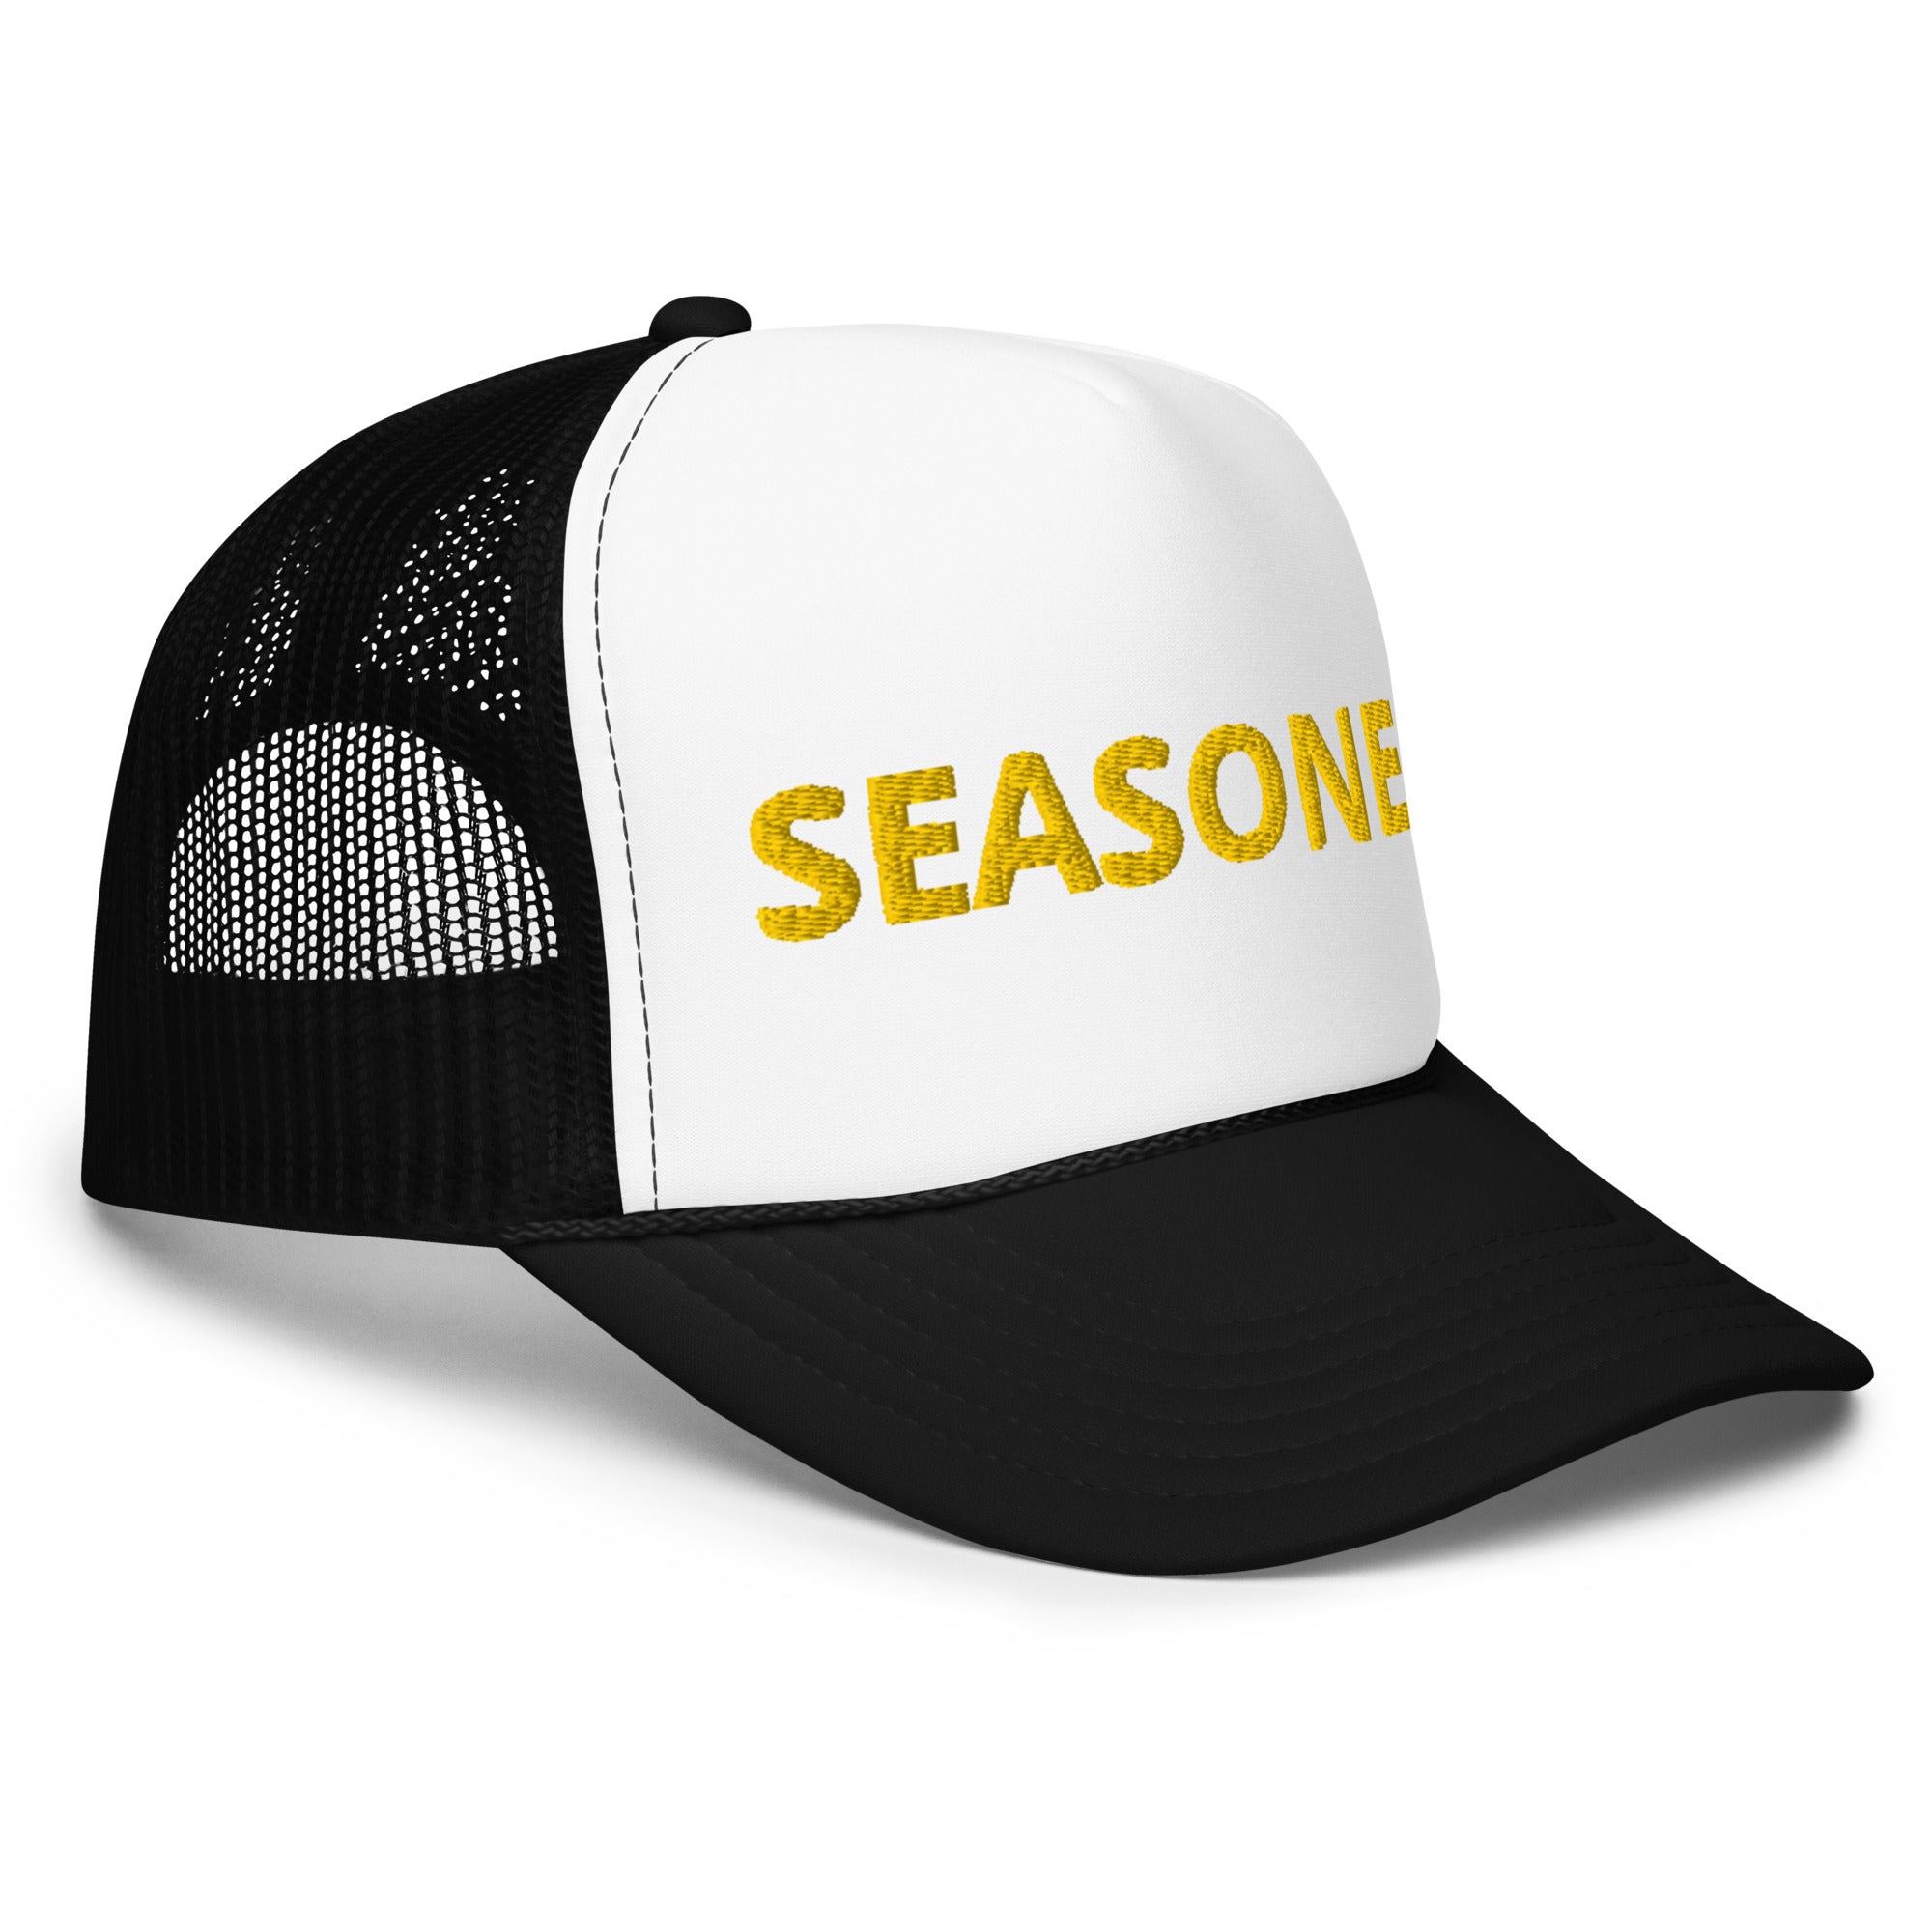 "Seasoned" Trucker Hat